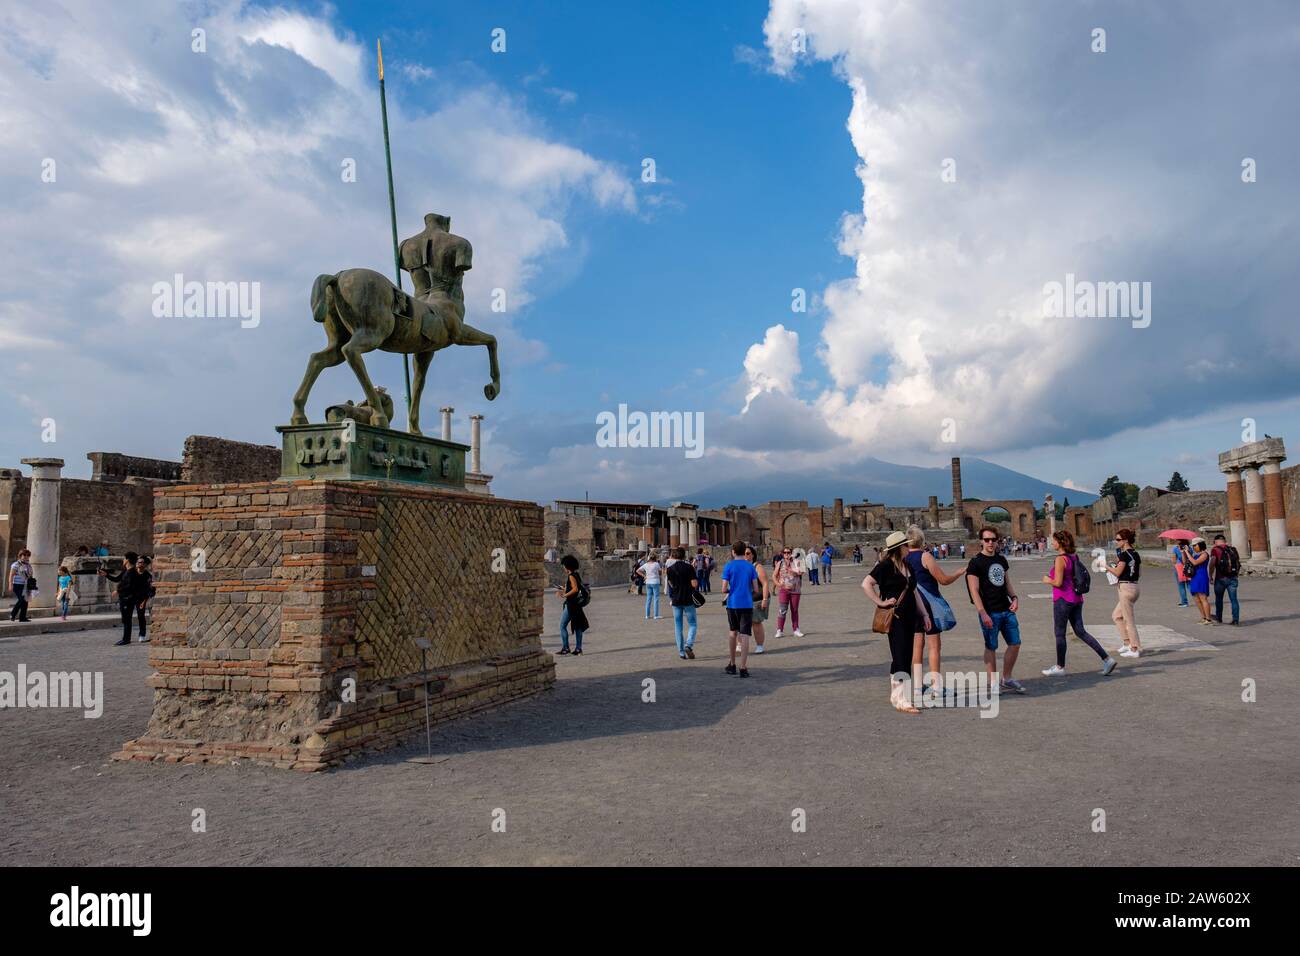 Ruines de Pompéi, touristes visitant le forum de Pompéi - Centauro, statue de bronze d'Igor Motoraj, Mont Vésuve sur fond, ancienne ville de Pompéi, Italie Banque D'Images